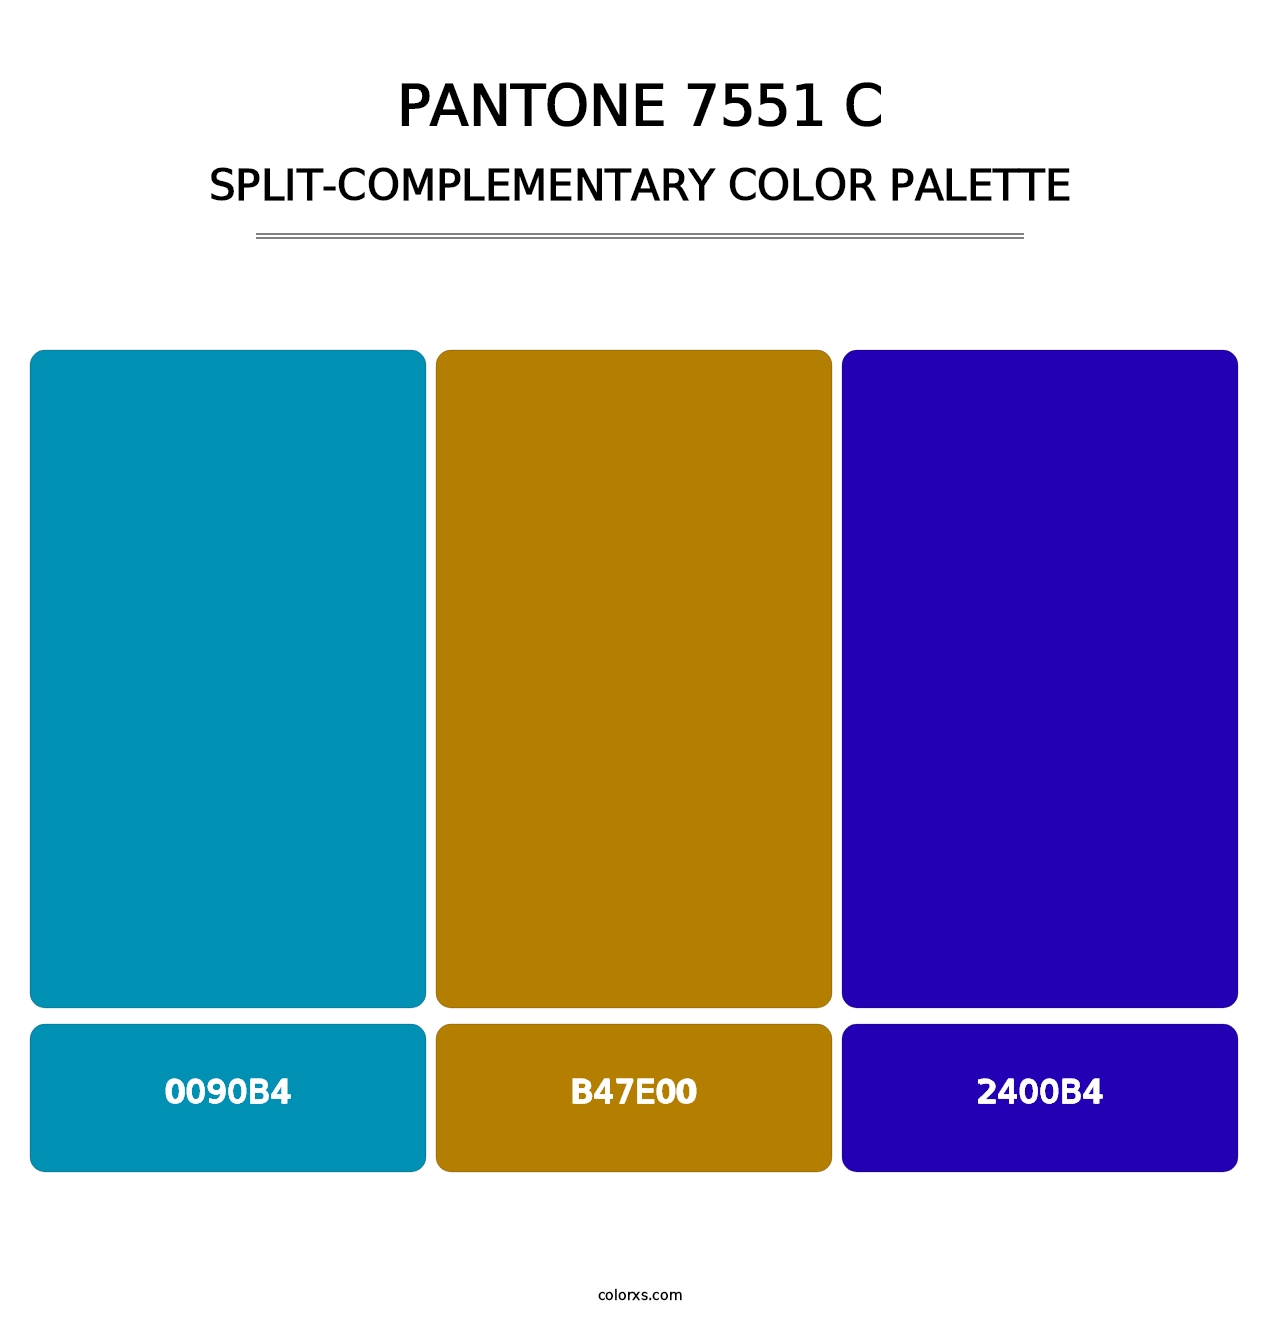 PANTONE 7551 C - Split-Complementary Color Palette